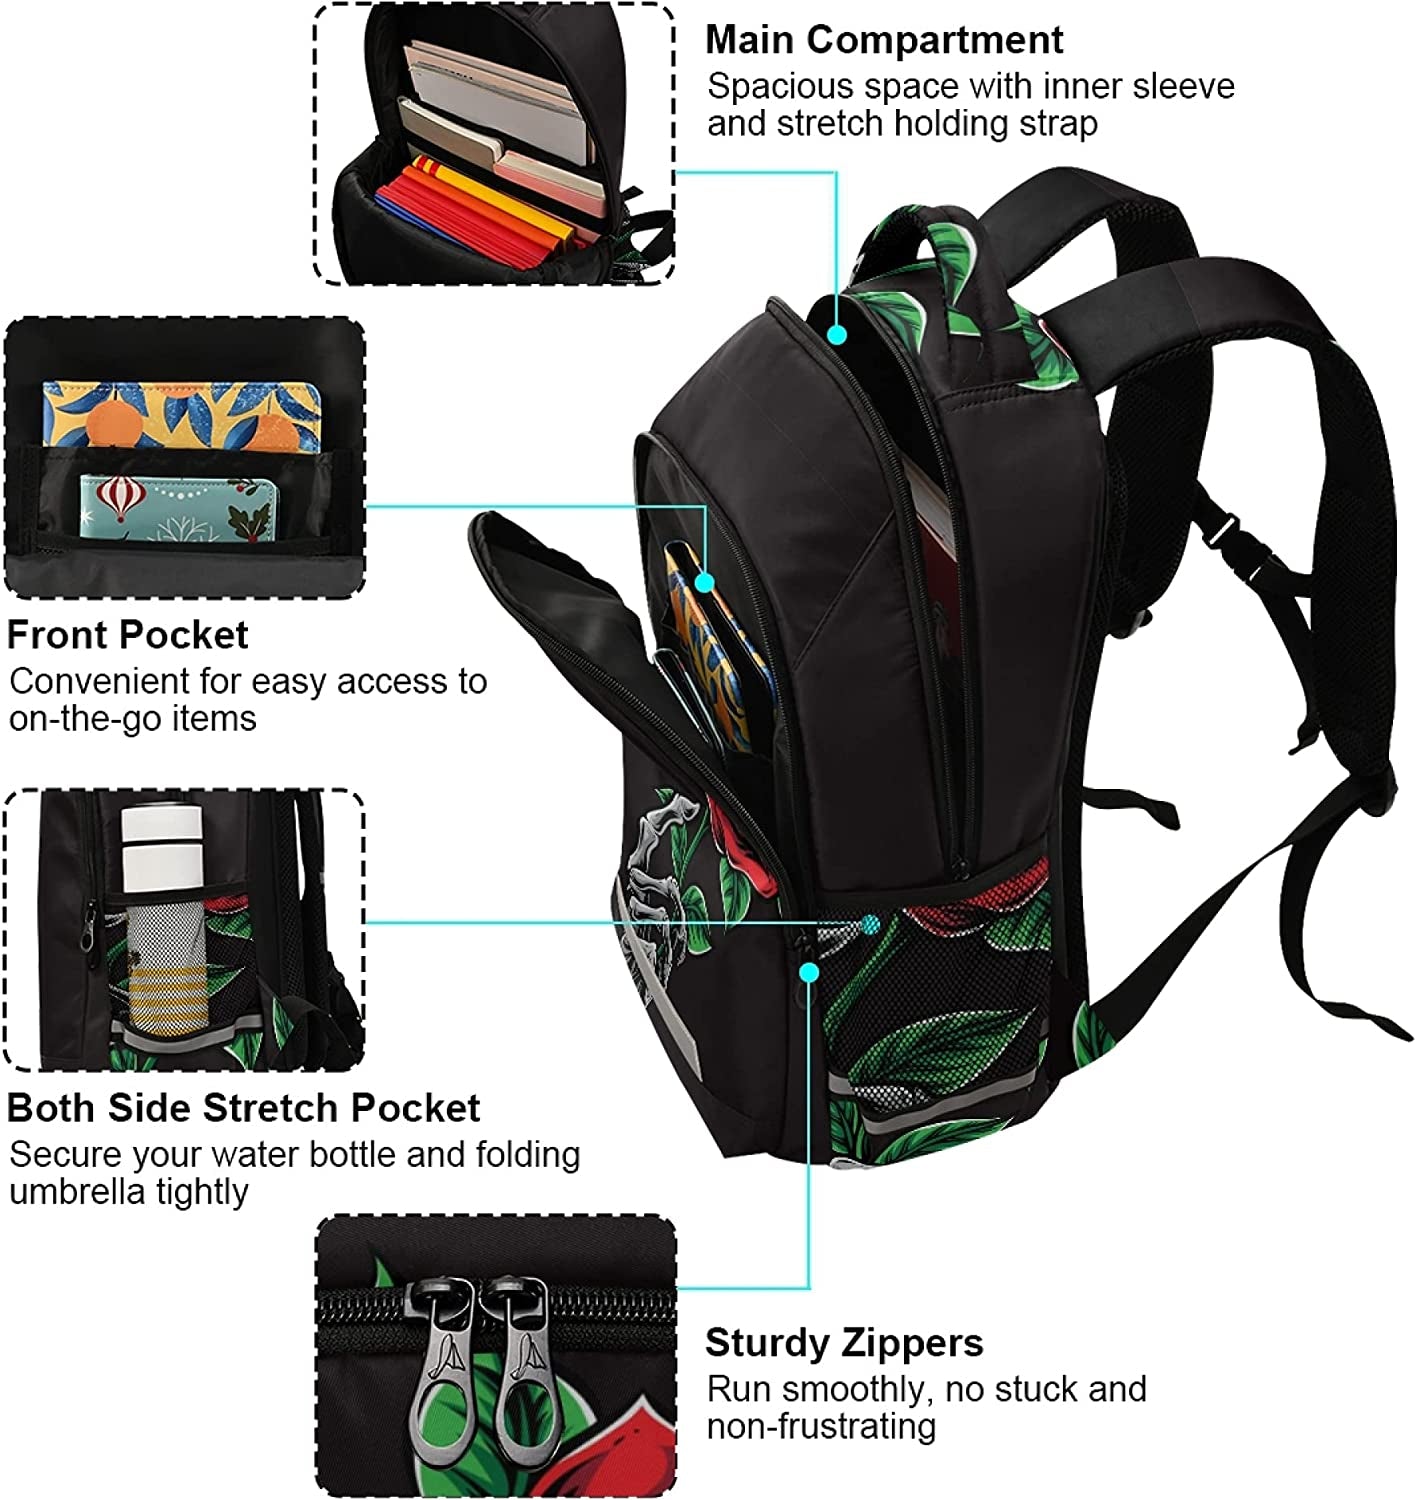 Rose Skull Backpacks Laptop School Book Bag Lightweight Daypack for Men Women Teens Kids